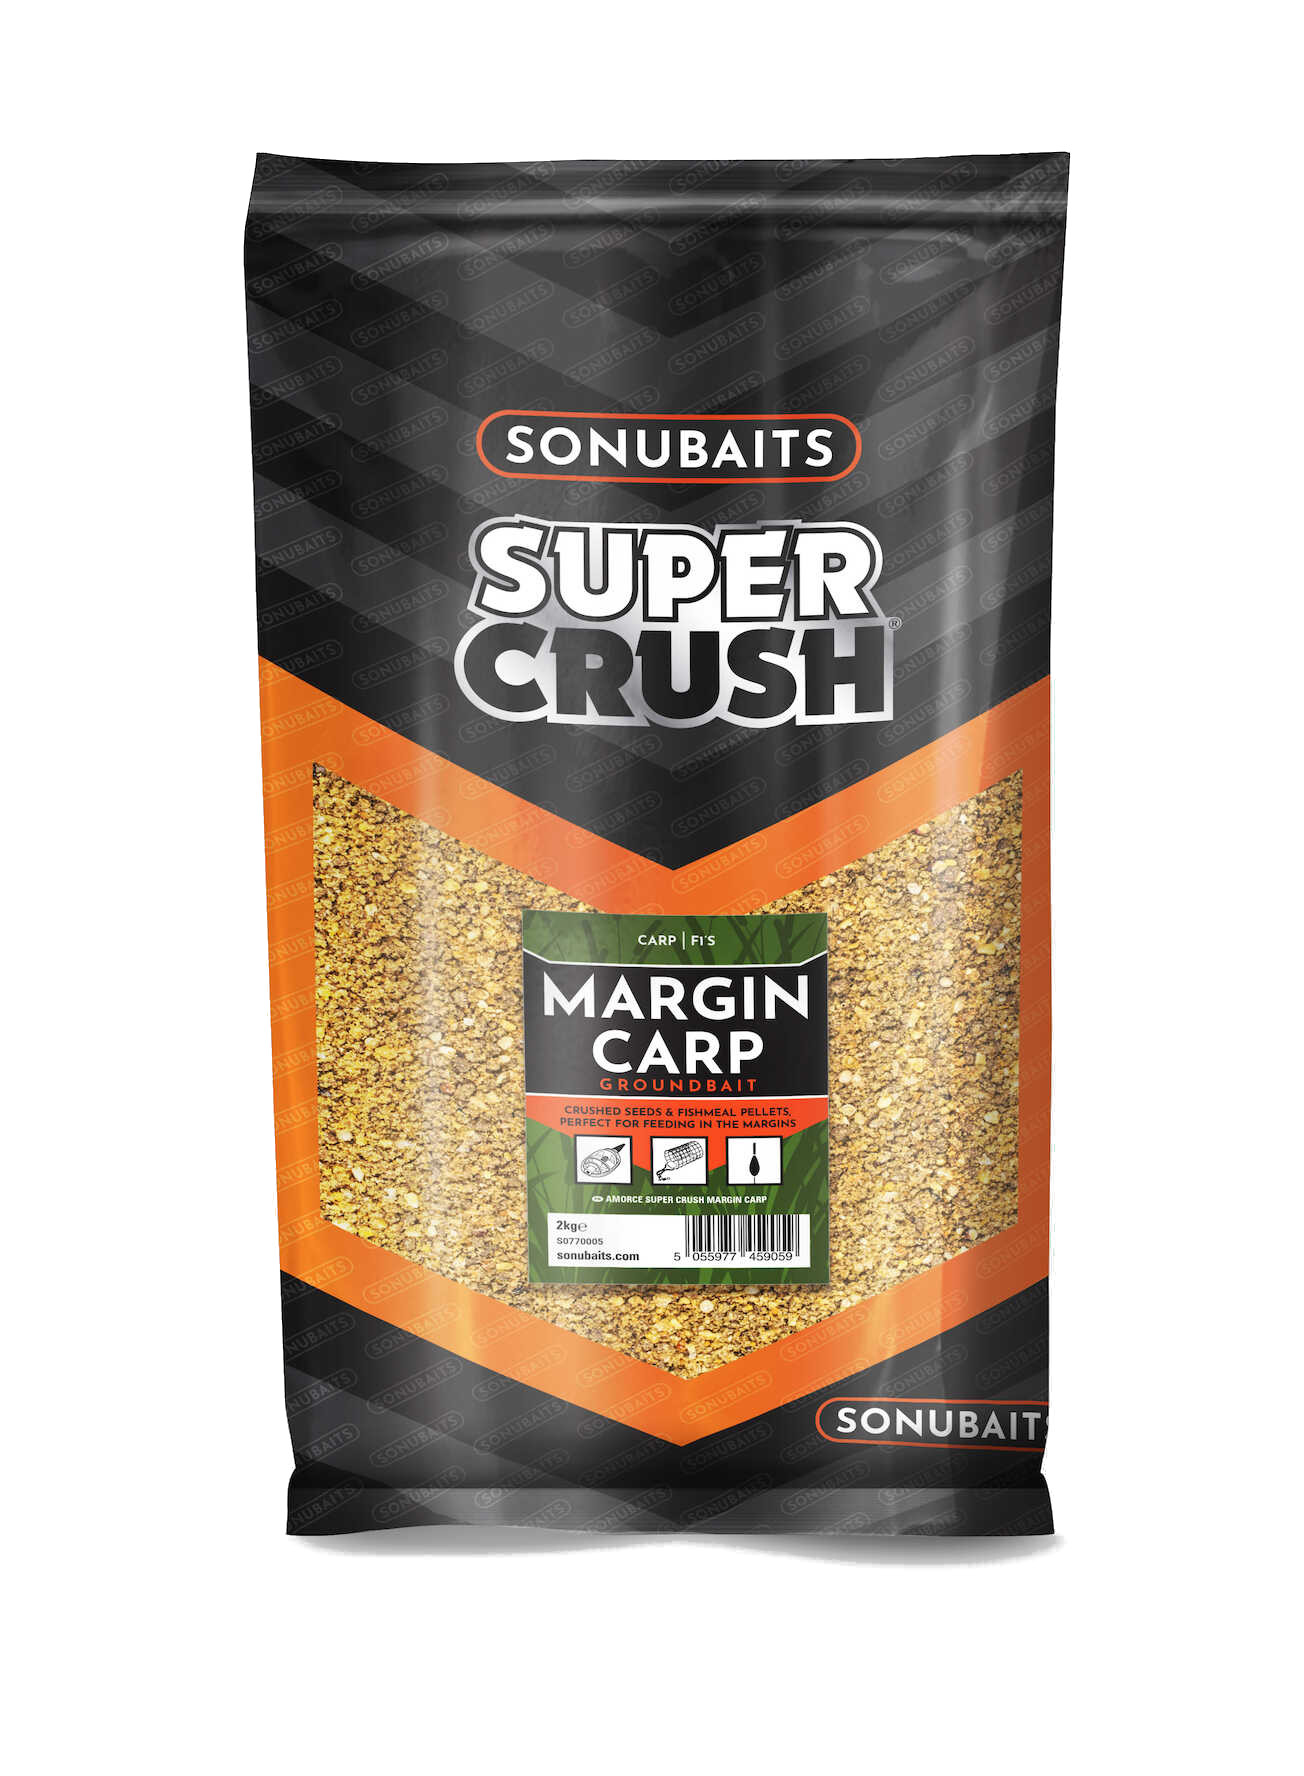 Esca Sonubaits Supercrush Margin Carp (2kg)